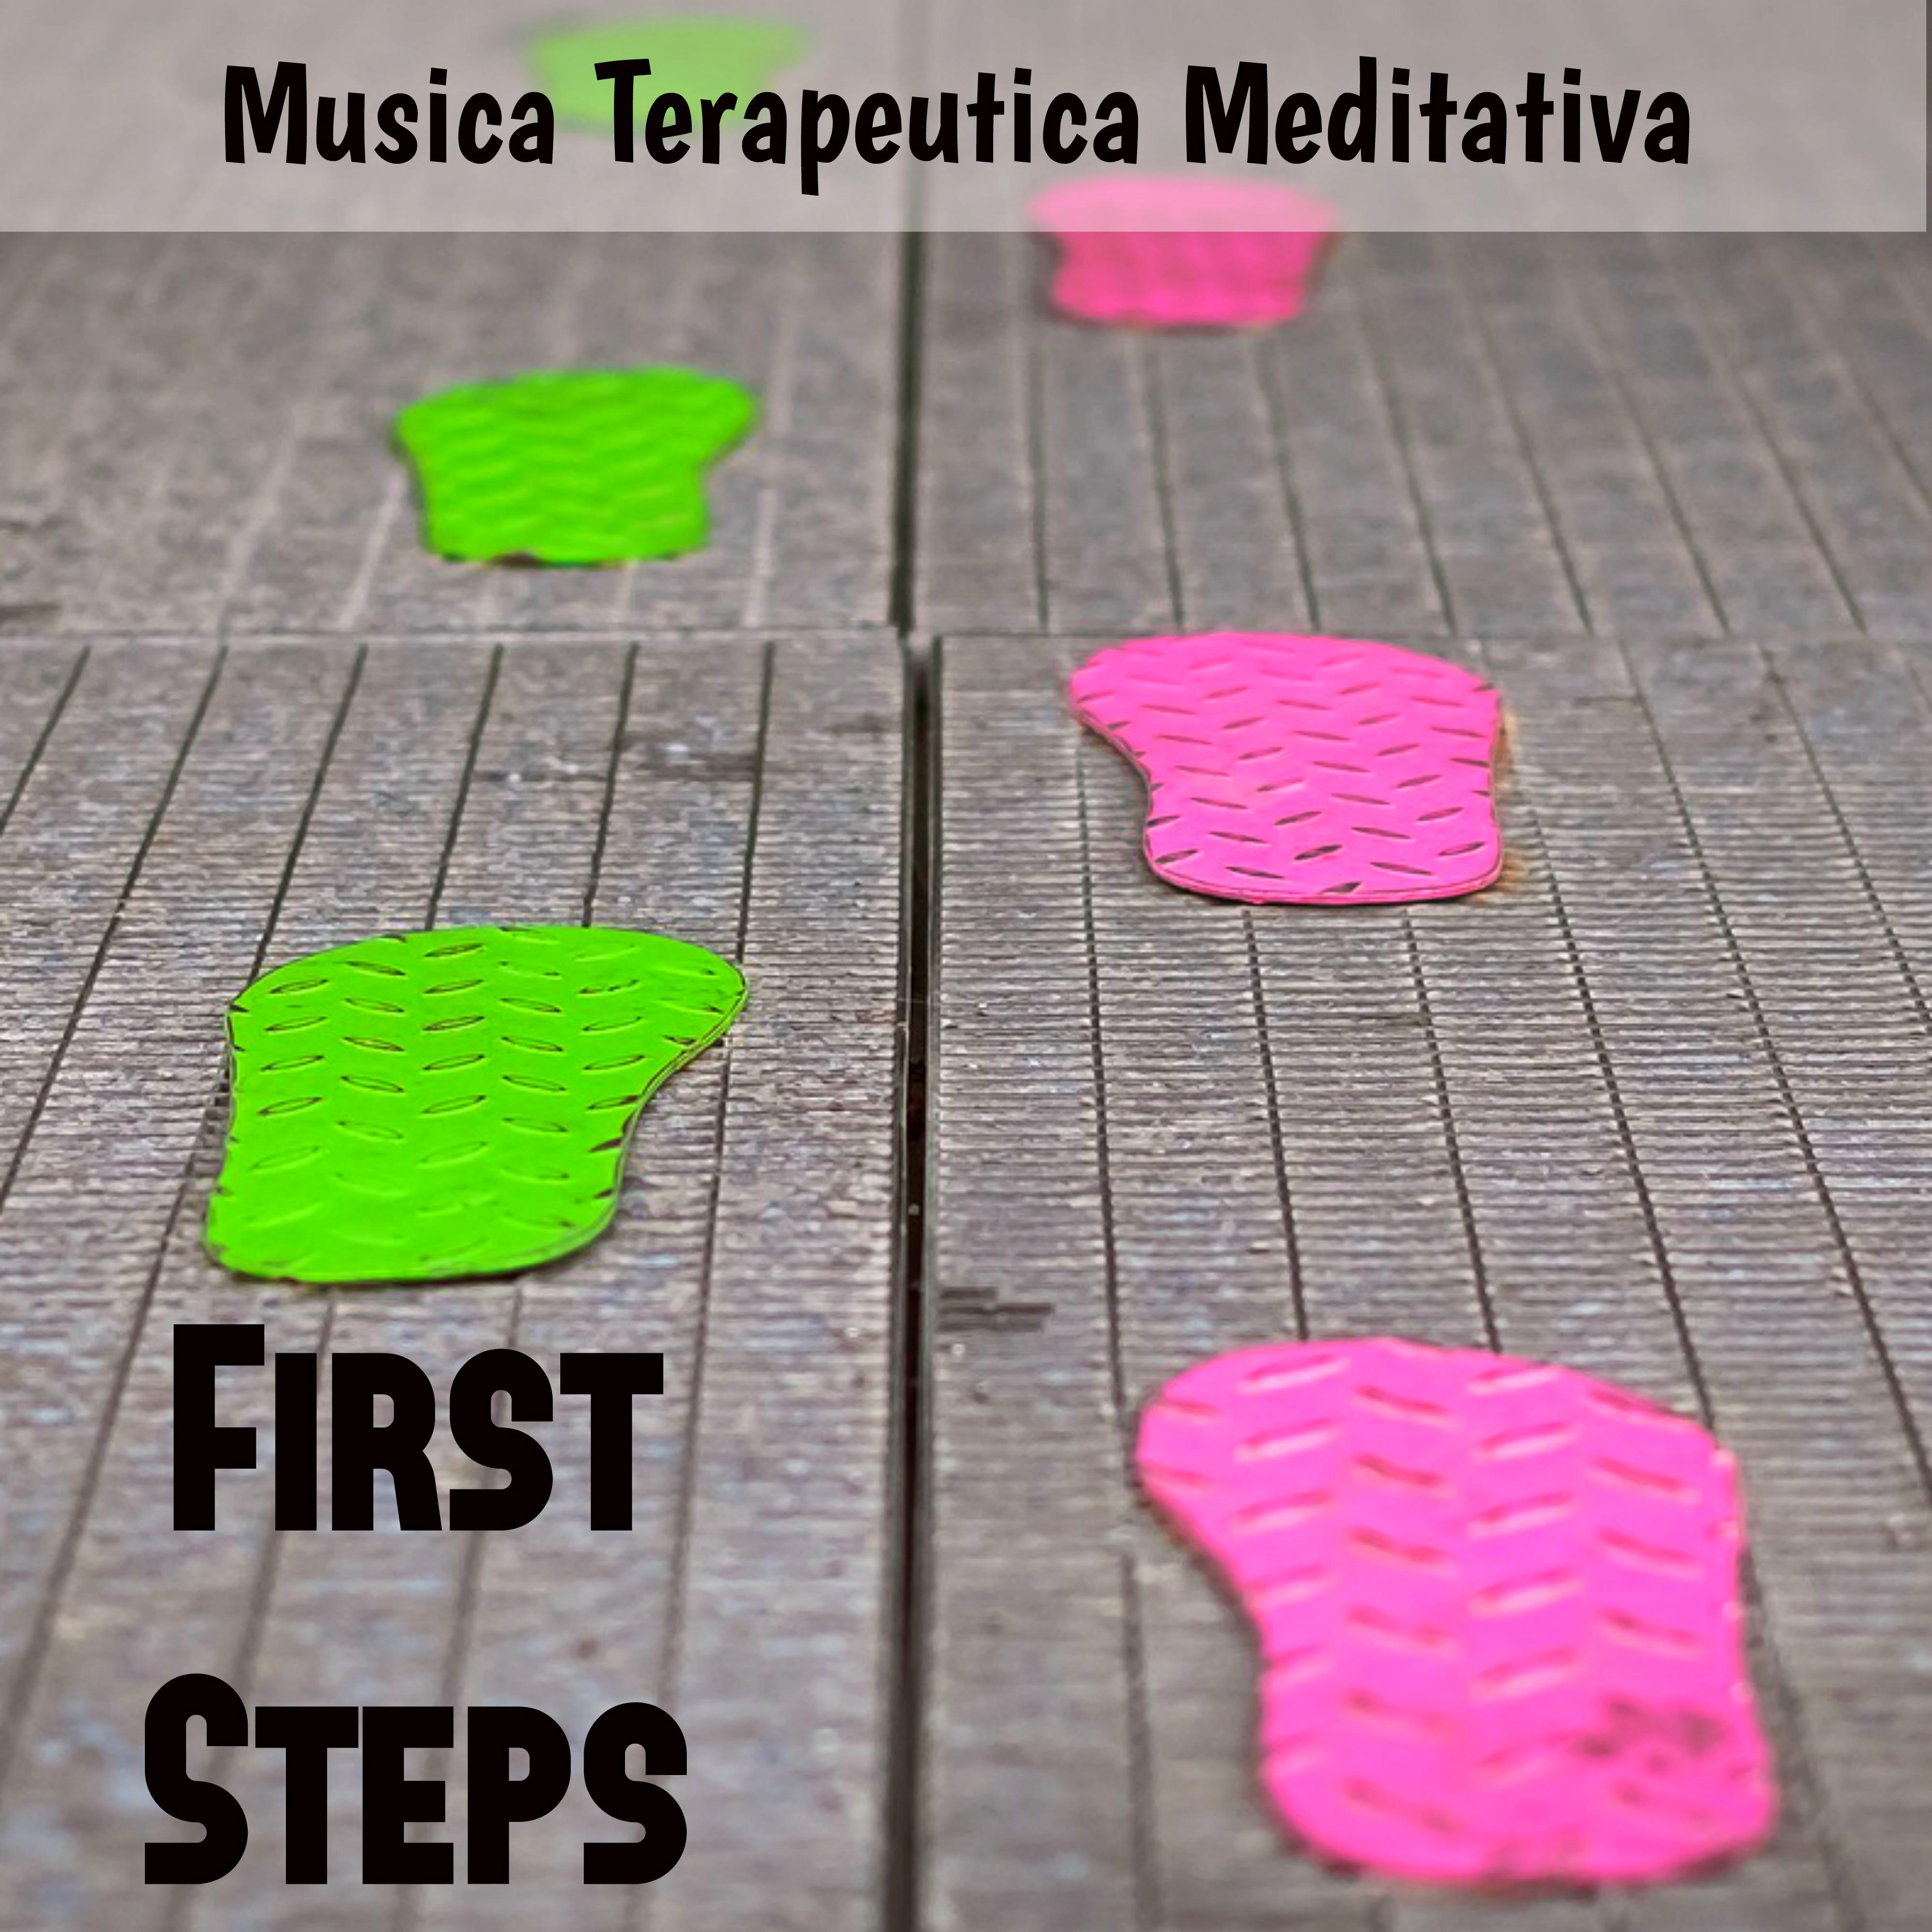 First Steps - Musica Terapeutica Meditativa per un Corpo Sano Salute Mentale Insonnia Rimedi con Suoni della Natura Benessere Spirituali